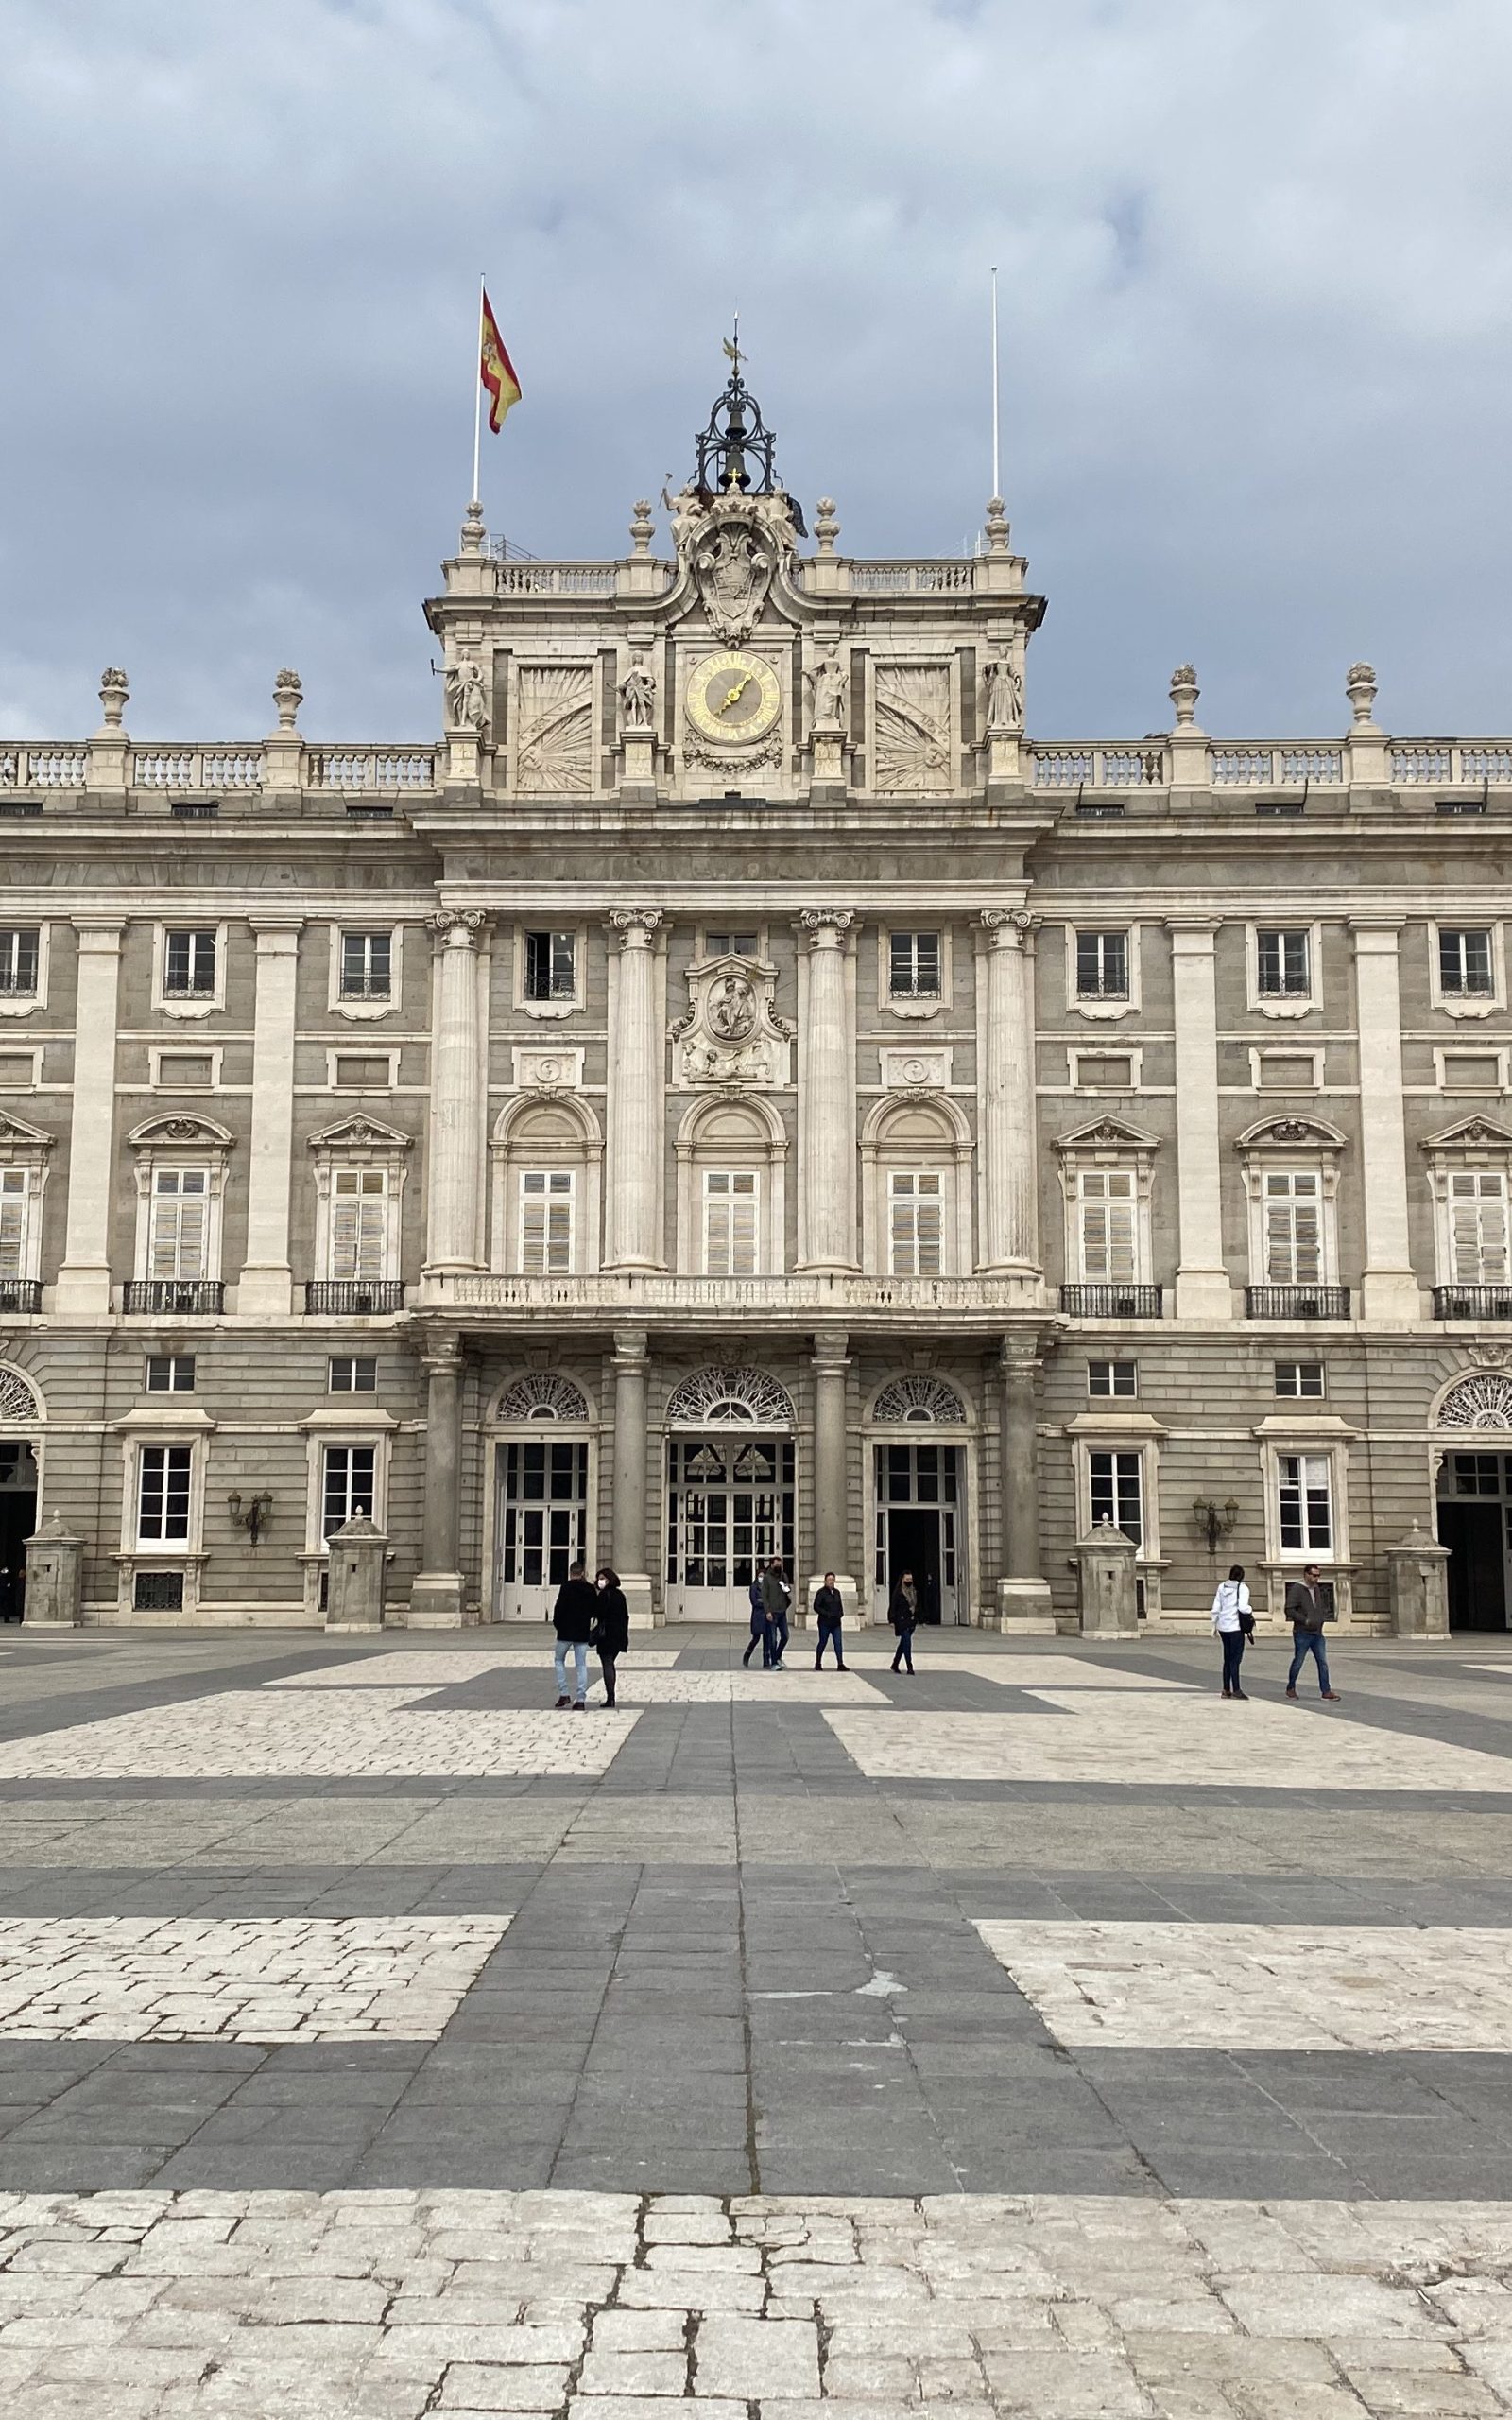 Visita Guiada por el Palacio Real de Madrid | Visitas Guiadas por Madrid - The Guides You Need